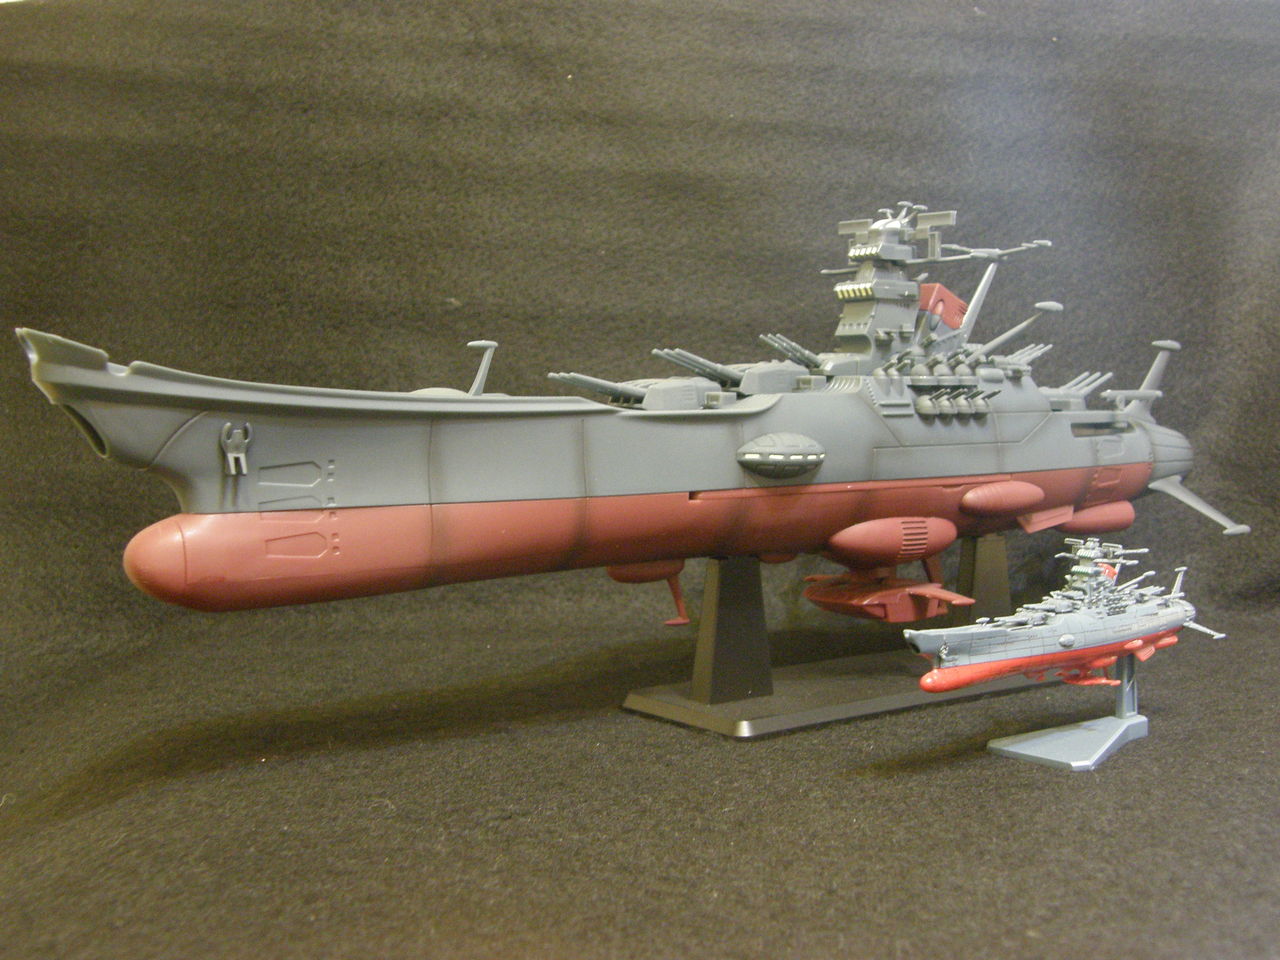 宇宙戦艦ヤマトスーパーメカニクス 1/665 フィギュア プライズ タイトー